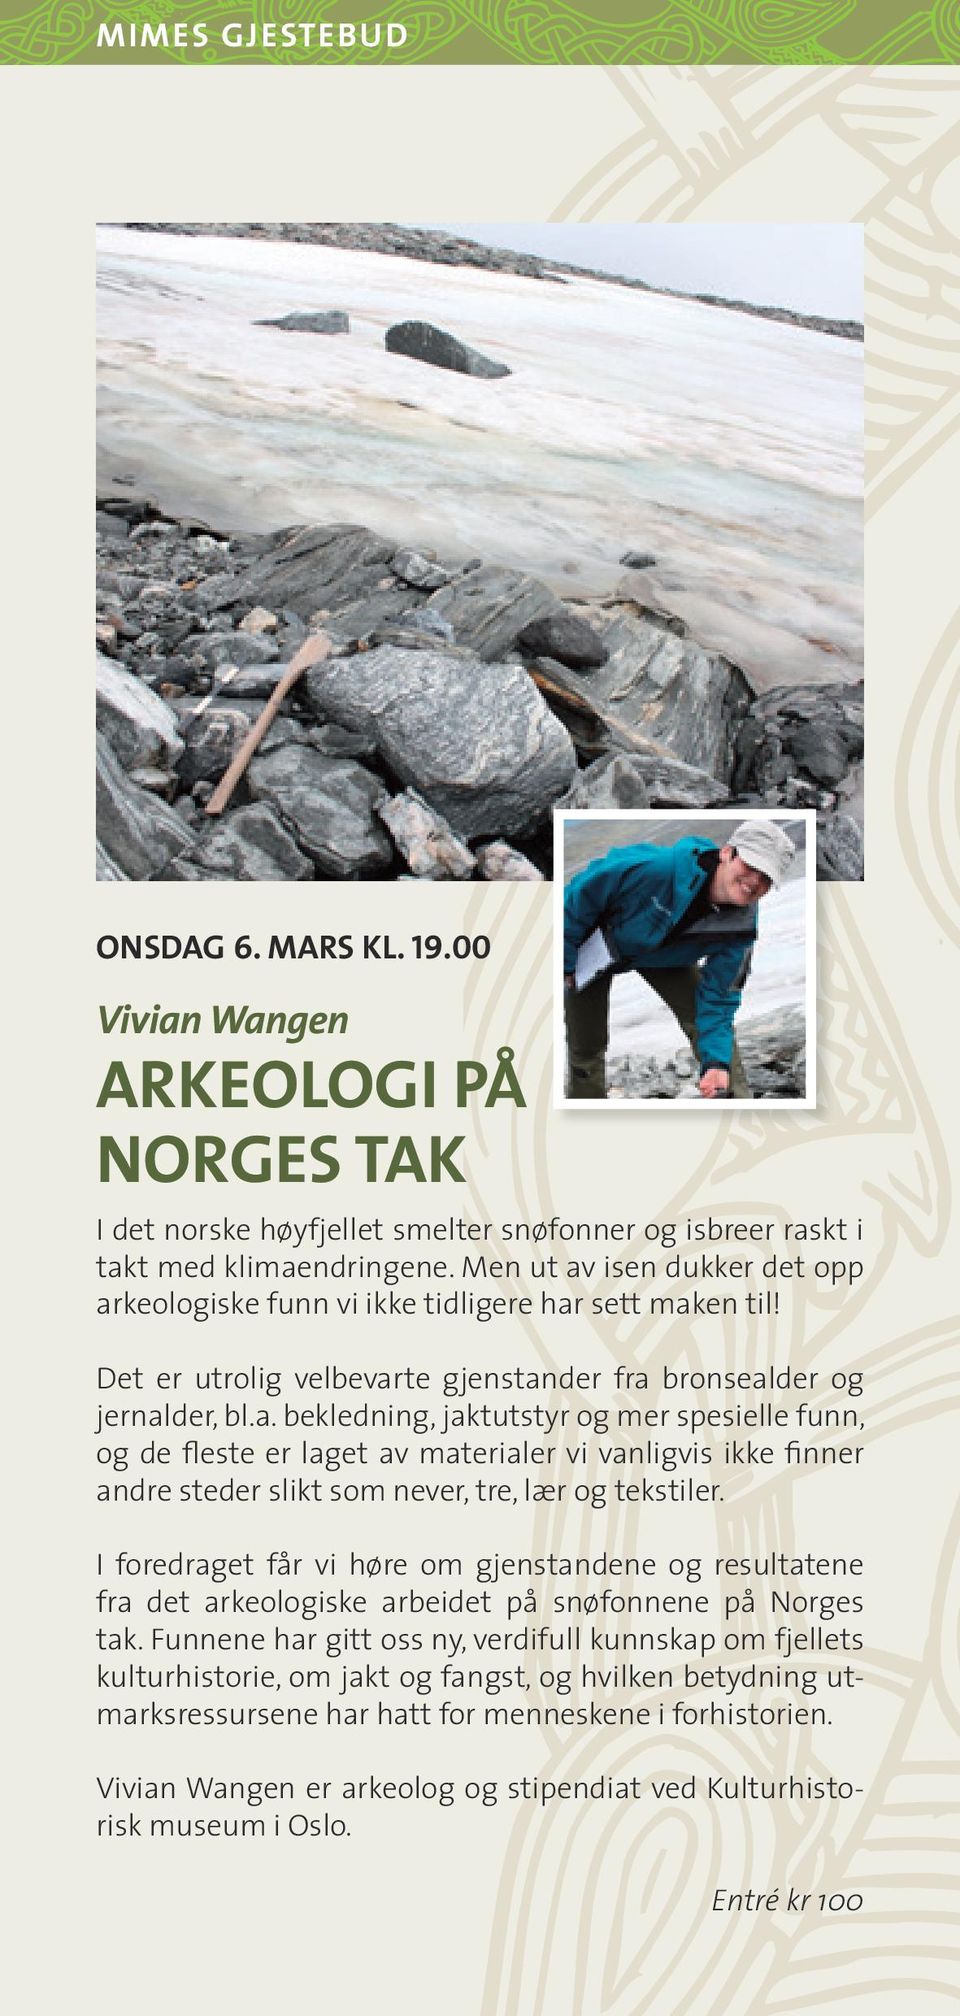 I foredraget får vi høre om gjenstandene og resultatene fra det arkeologiske arbeidet på snøfonnene på Norges tak.